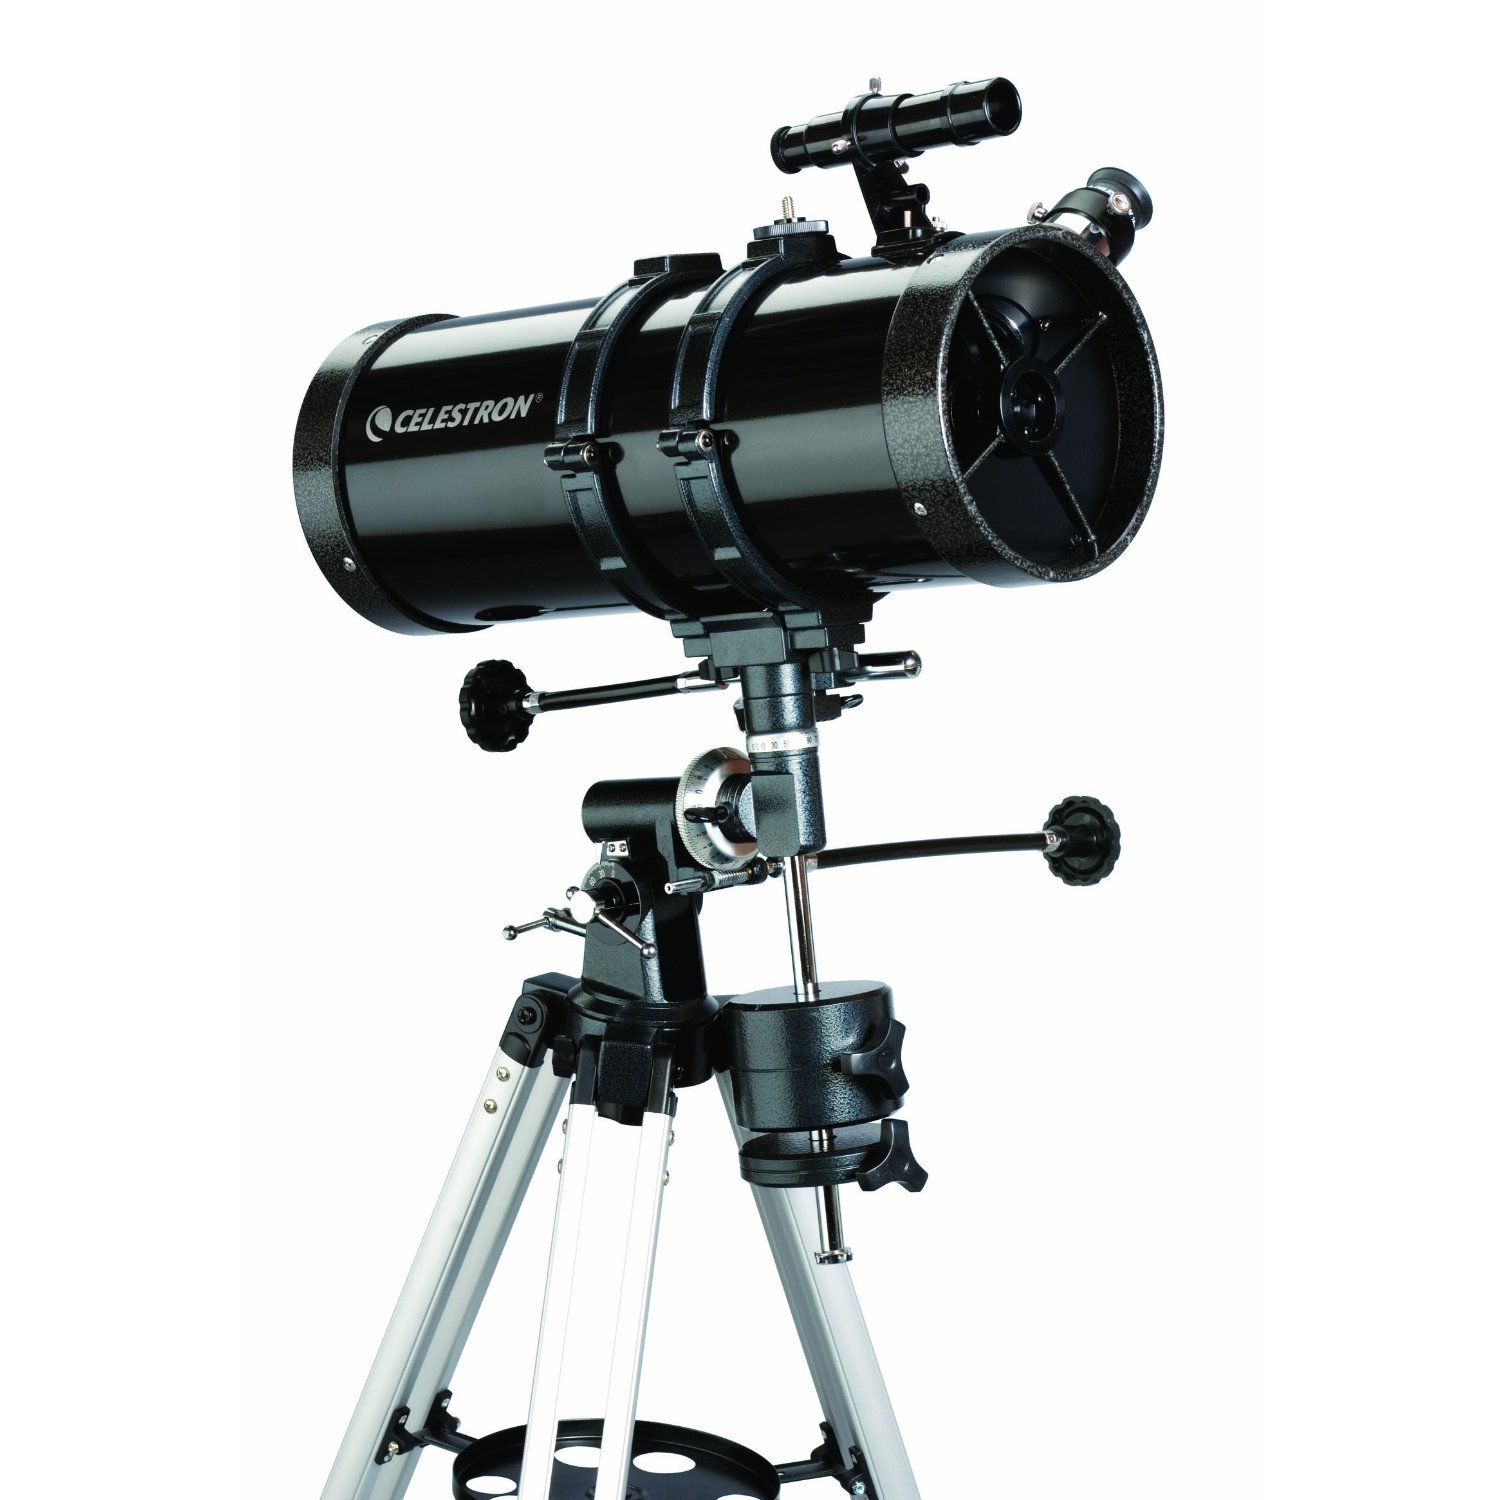 Celestron 127EQ PowerSeeker Telescope  $99.95